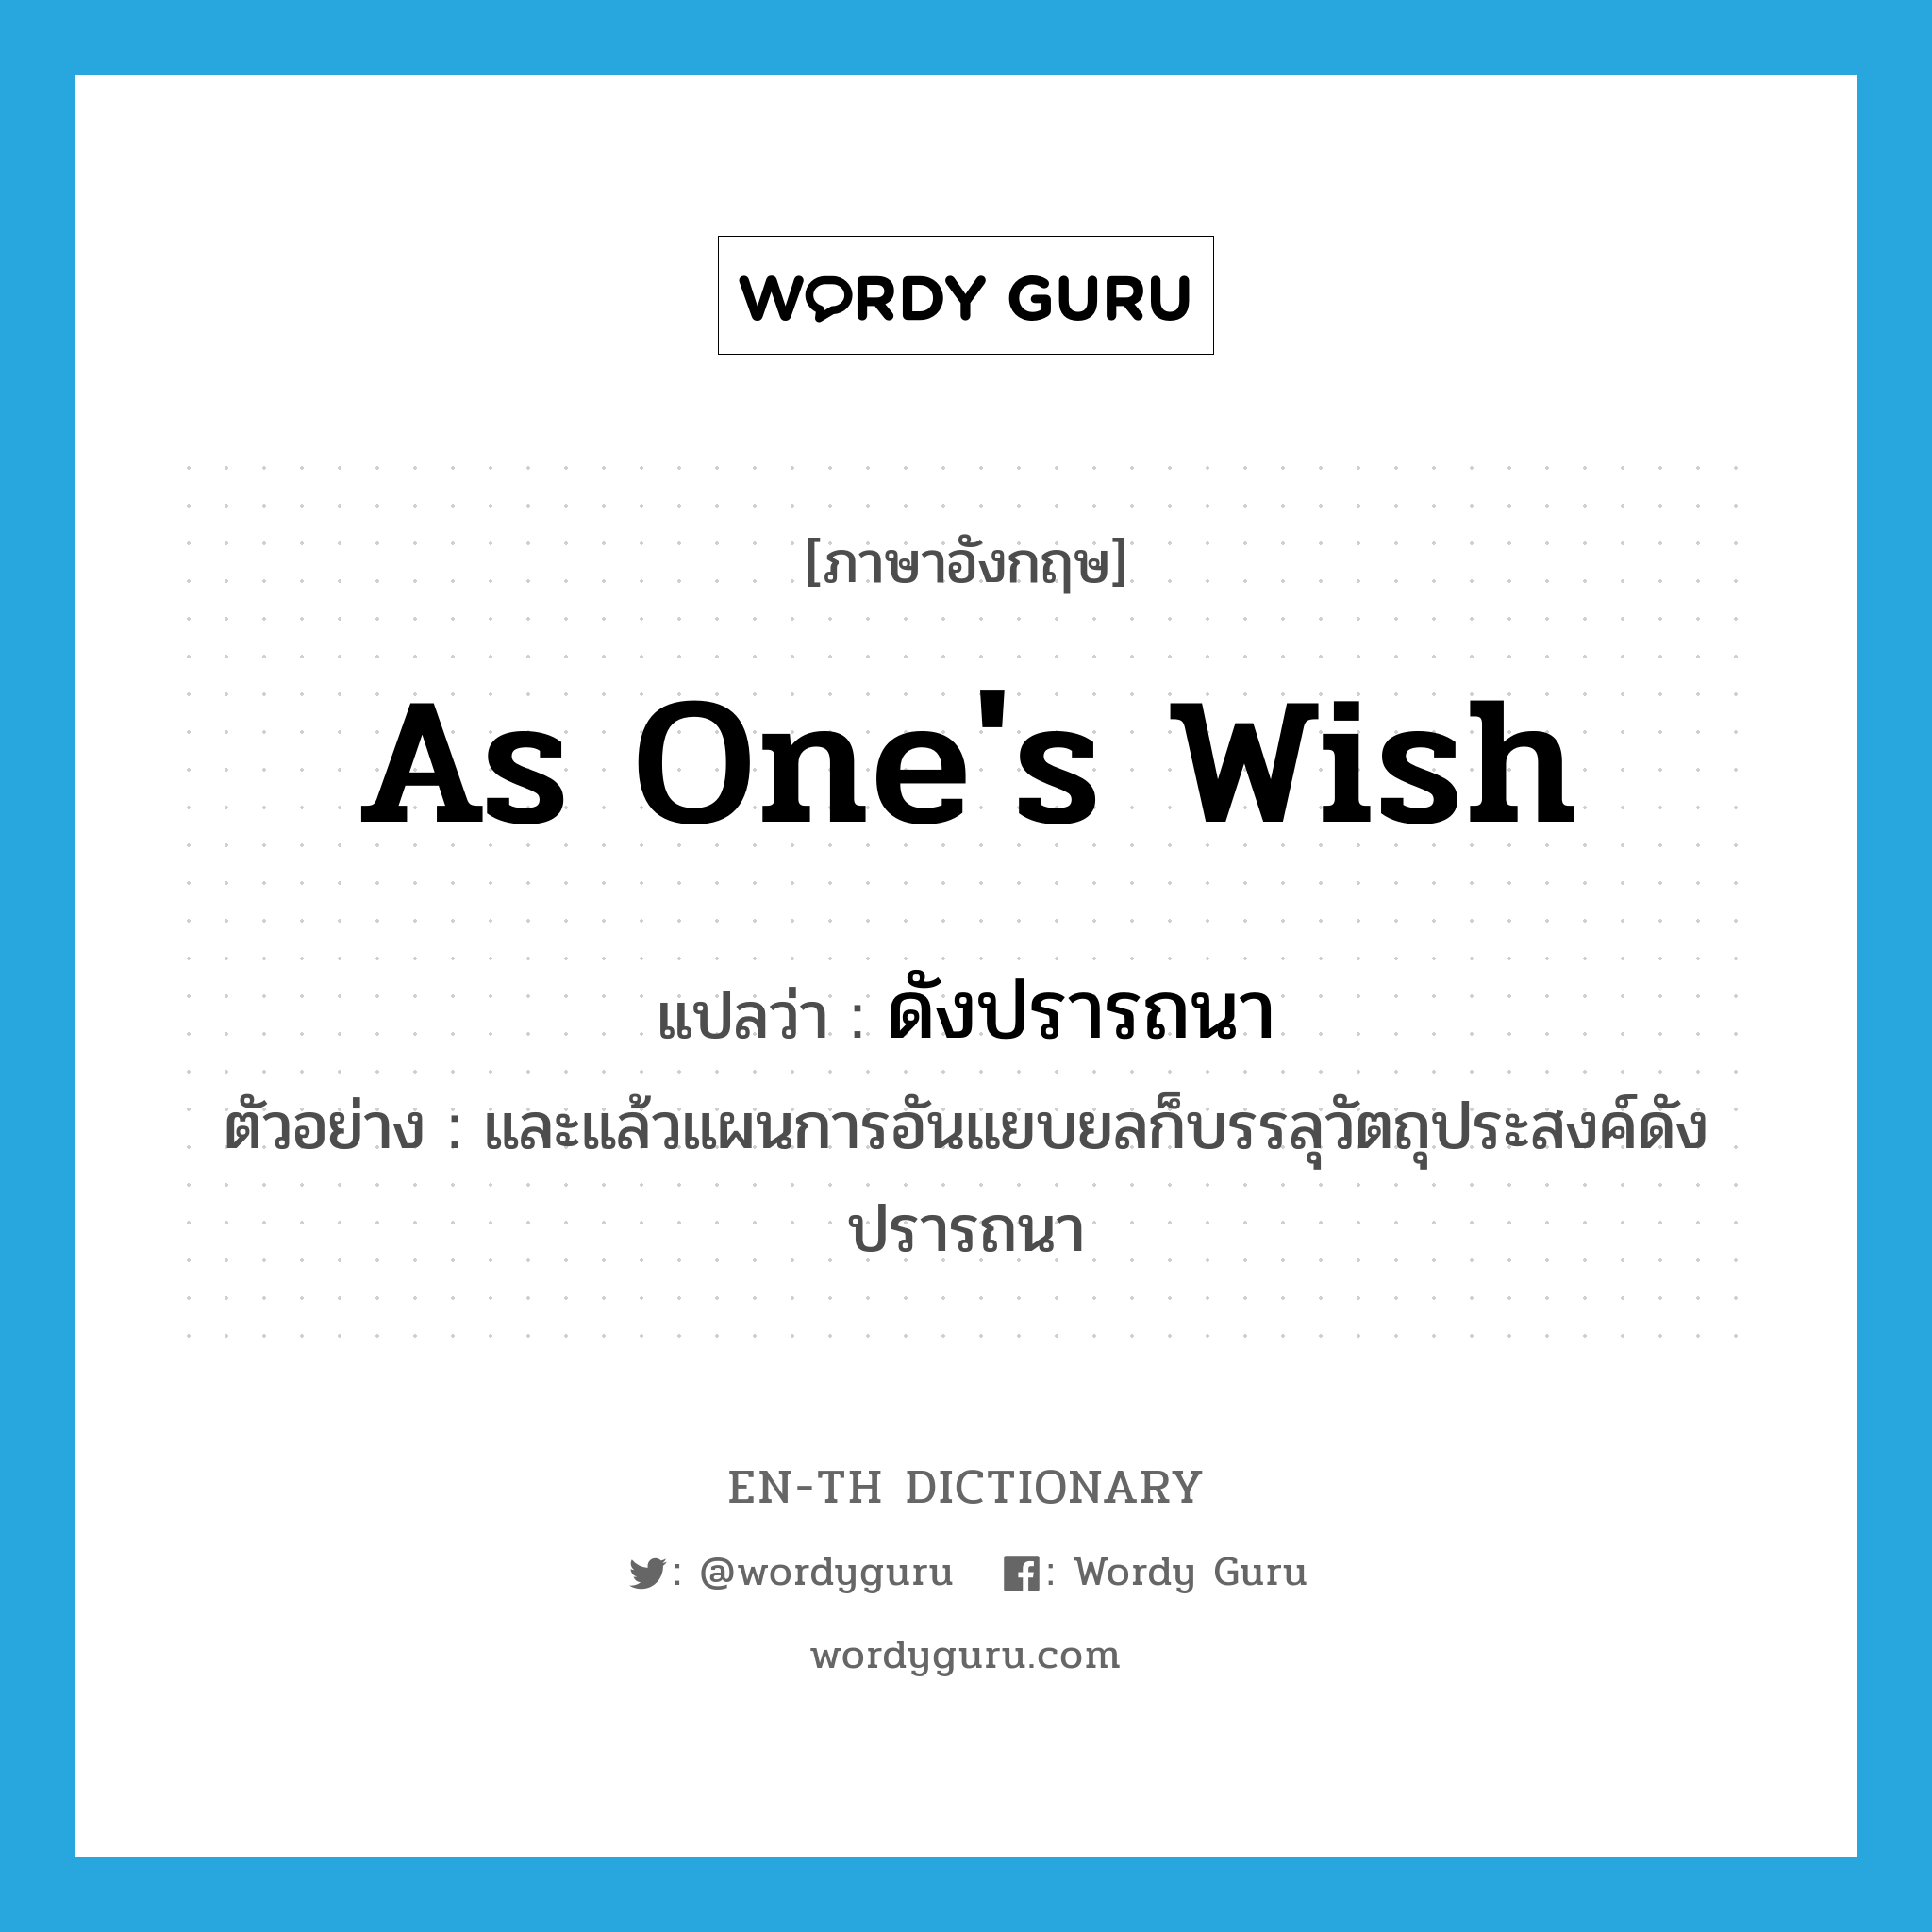 as one's wish แปลว่า?, คำศัพท์ภาษาอังกฤษ as one's wish แปลว่า ดังปรารถนา ประเภท ADV ตัวอย่าง และแล้วแผนการอันแยบยลก็บรรลุวัตถุประสงค์ดังปรารถนา หมวด ADV